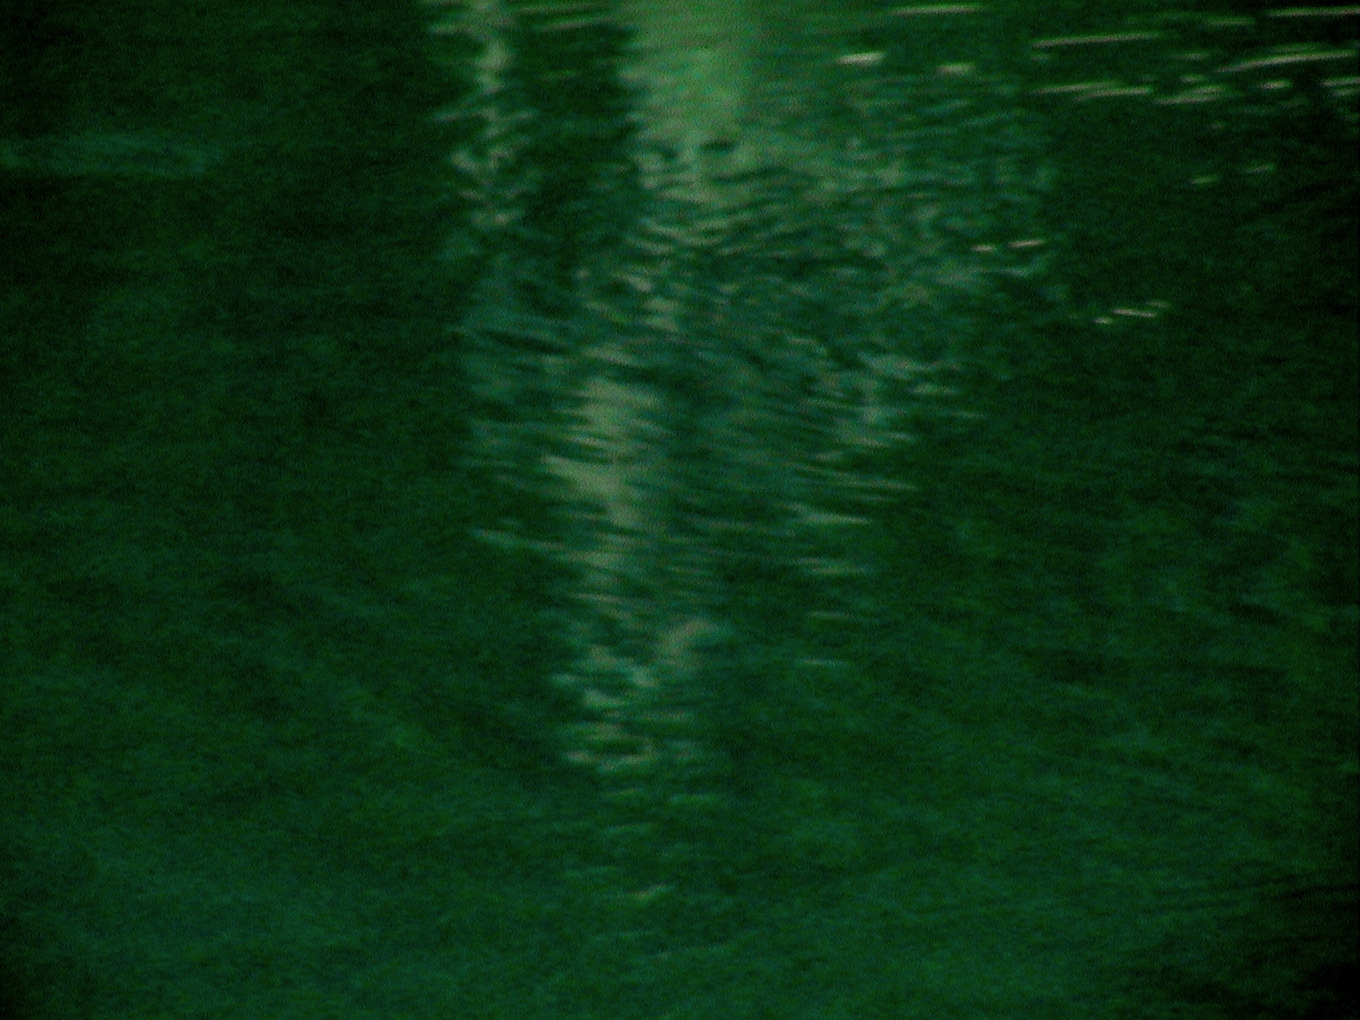 El espectro y el agua. Fotografía de Olmo Z. Agosto 2014